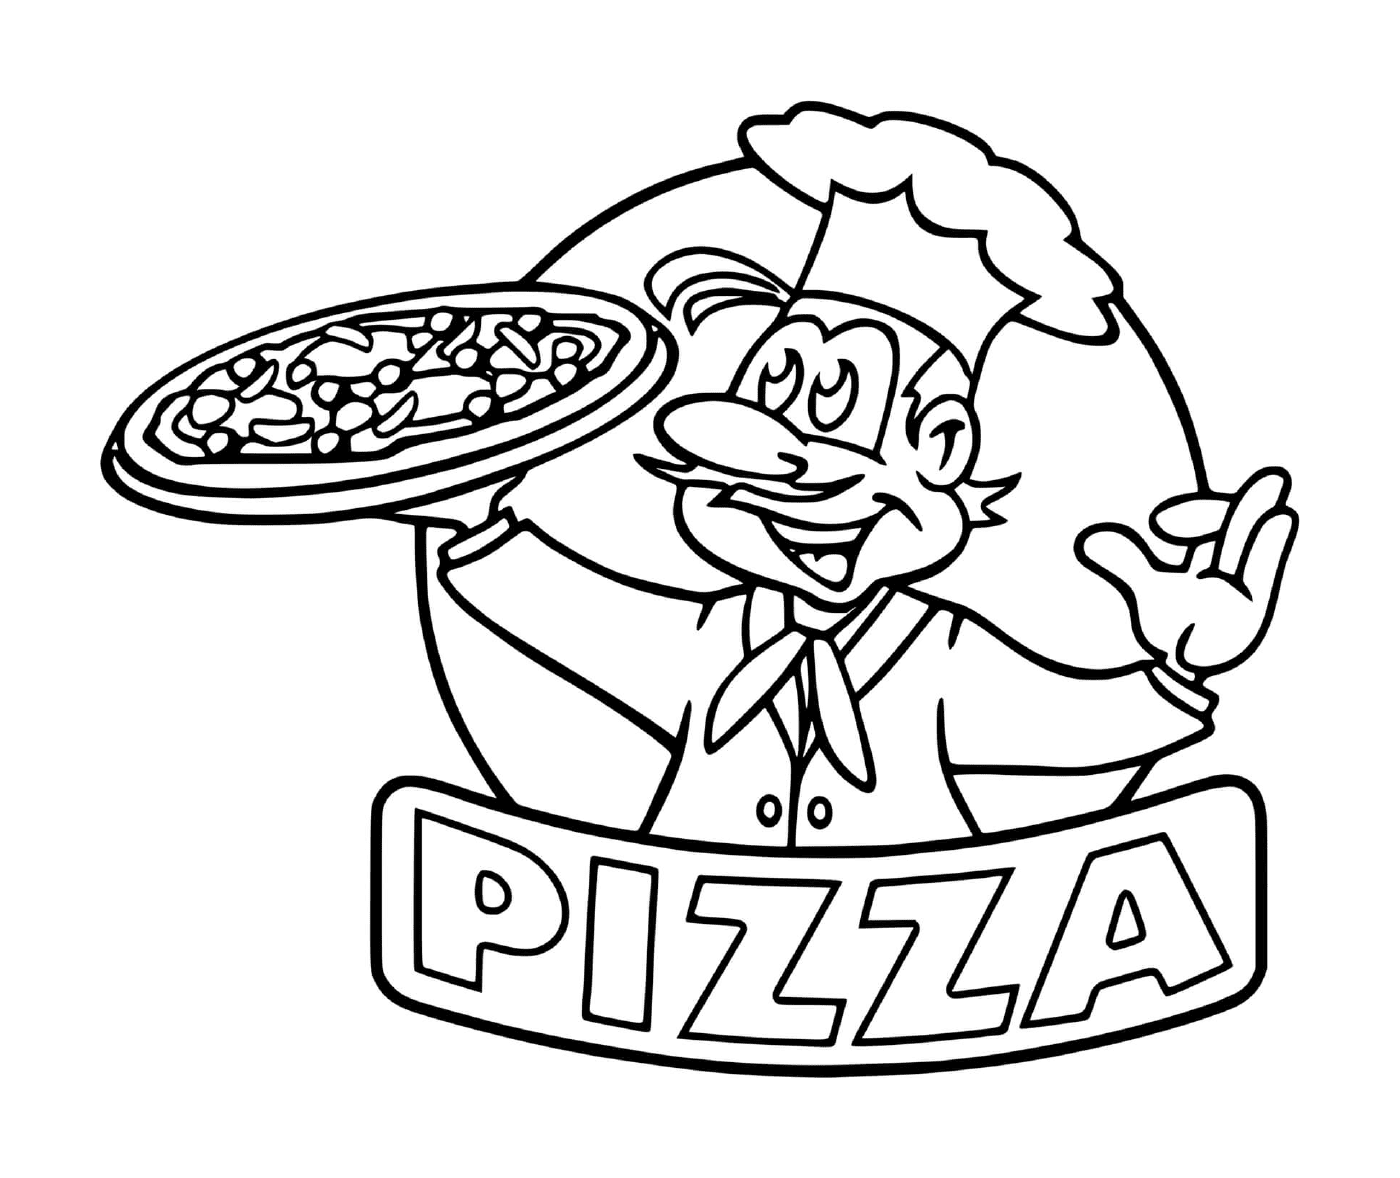  披萨餐厅厨师的标志 